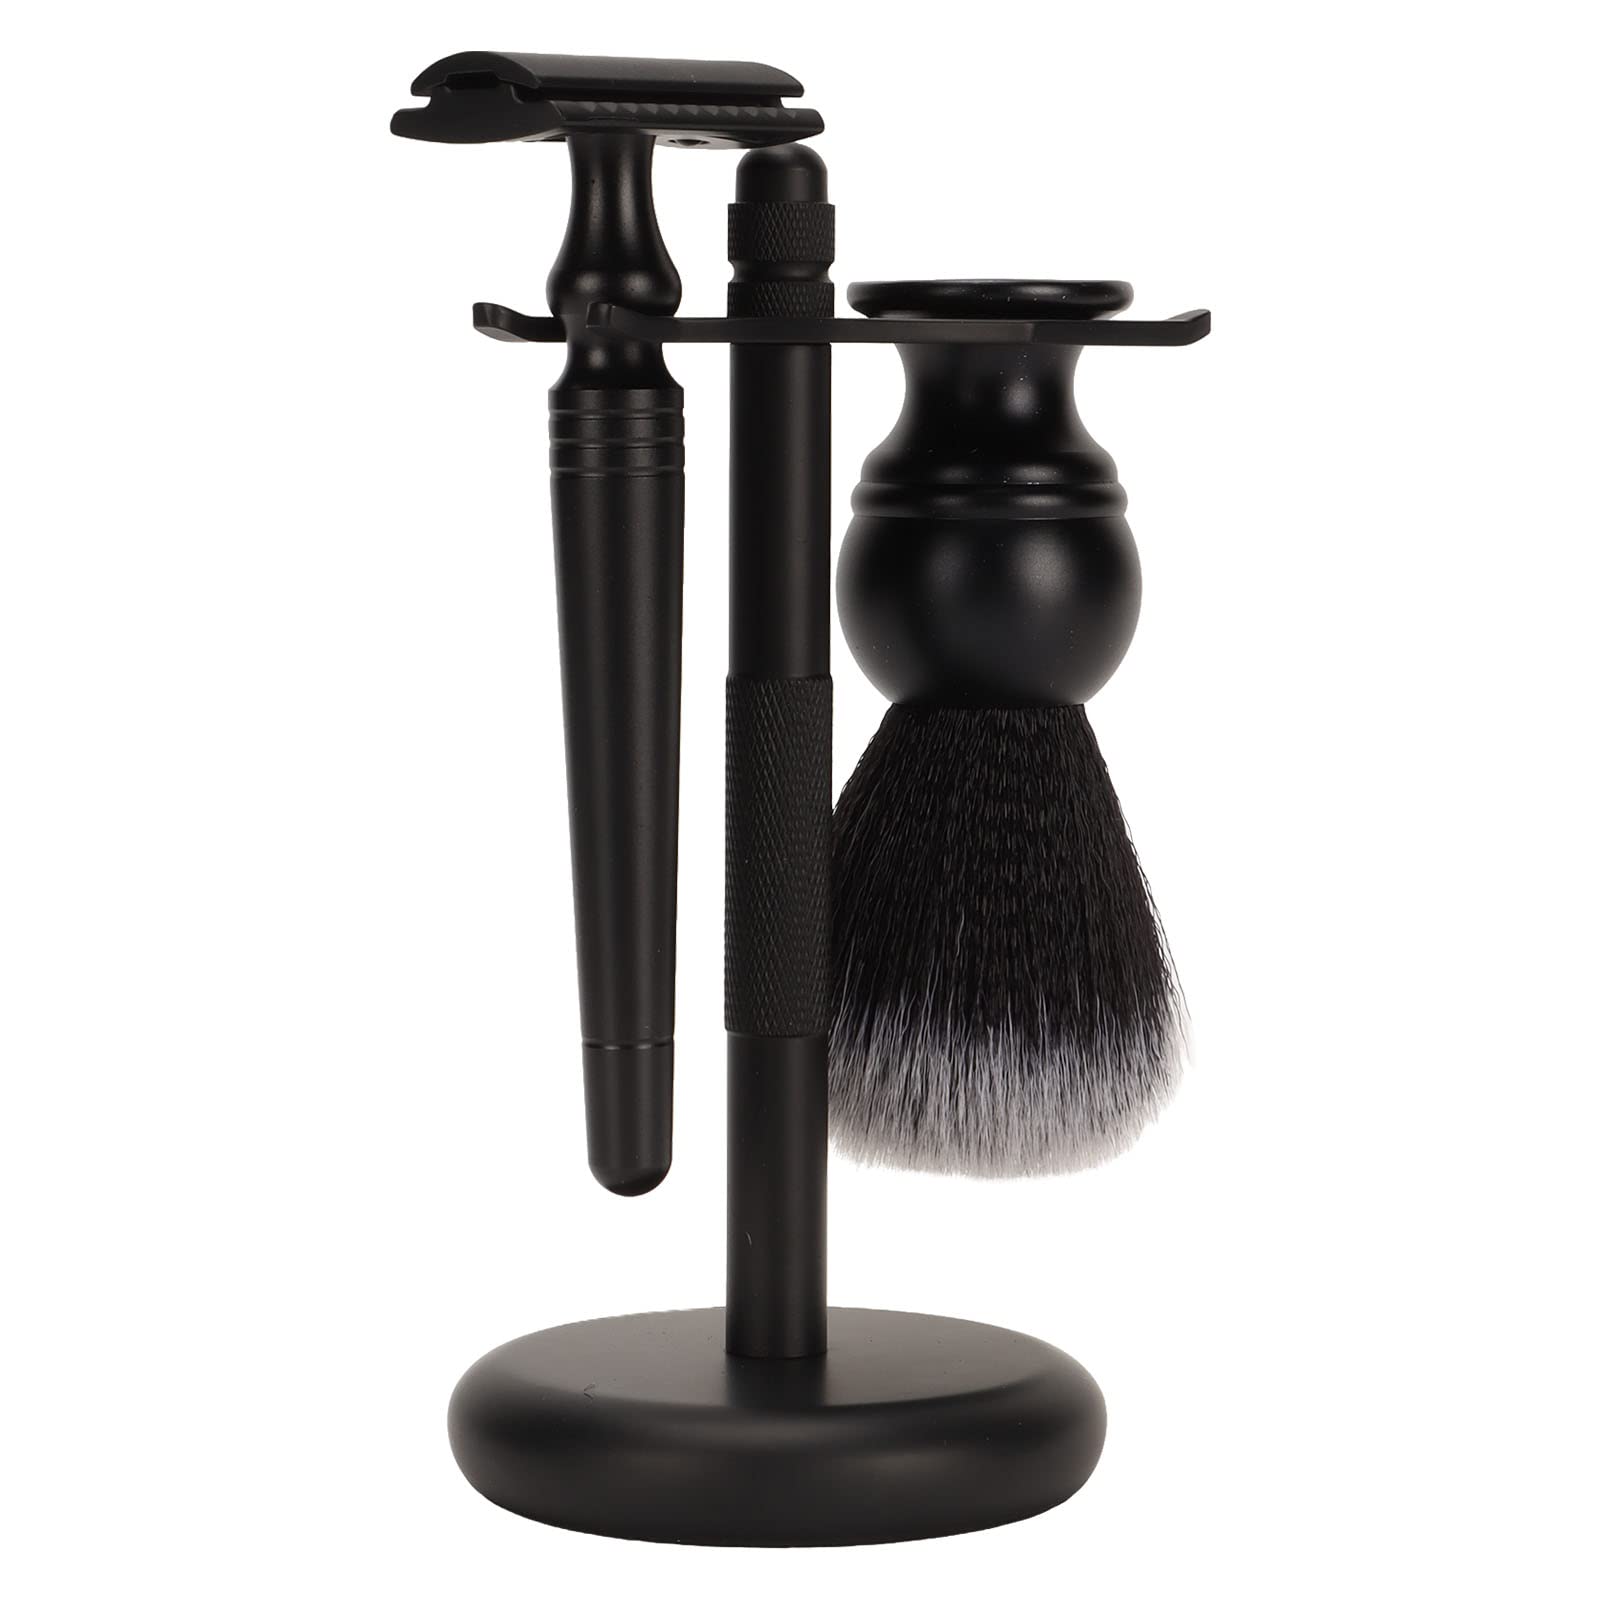 FILFEEL Shaving Kit for Men 3 in 1 Manual Shaving Set with Trimmer Stand Holder Beard Brush and